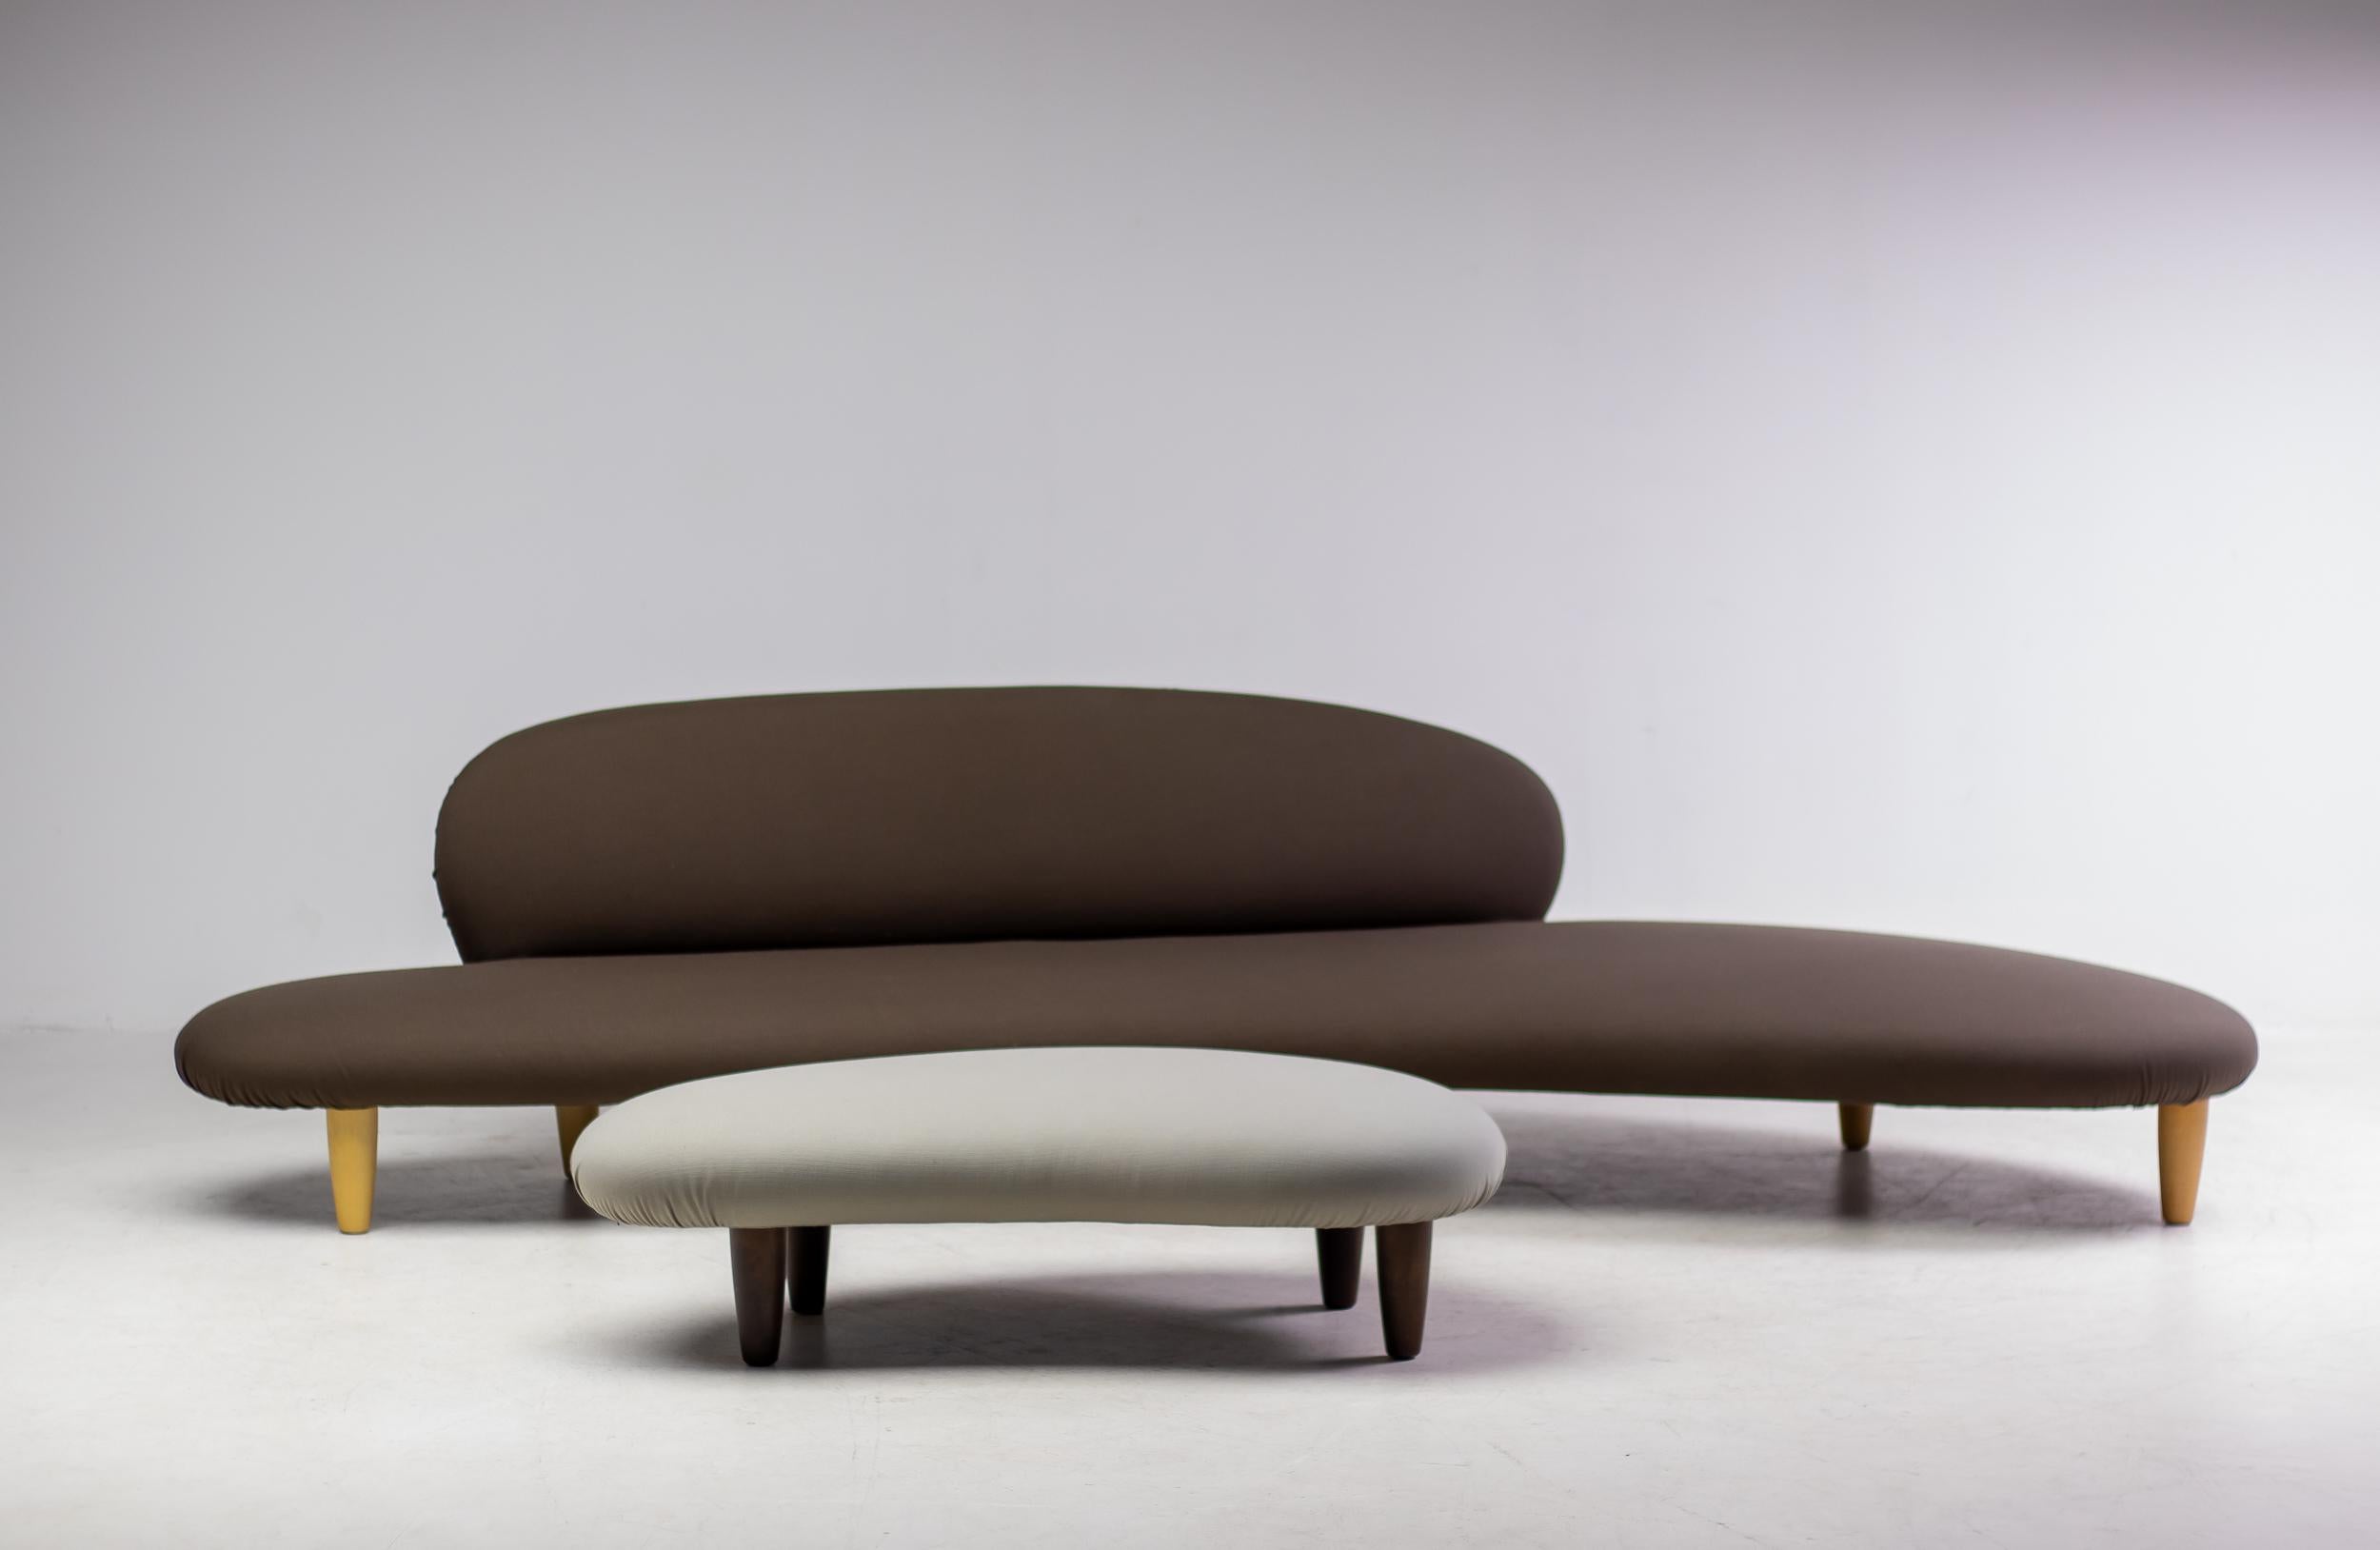 Die skulpturale Qualität von Noguchis Designvokabular kommt im Freeform Sofa zum Ausdruck: Es unterscheidet sich völlig von anderen Entwürfen der gleichen Zeit und wirkt in Kombination mit dem Ottomanen wie eine vergrößerte Skulptur aus flachen,